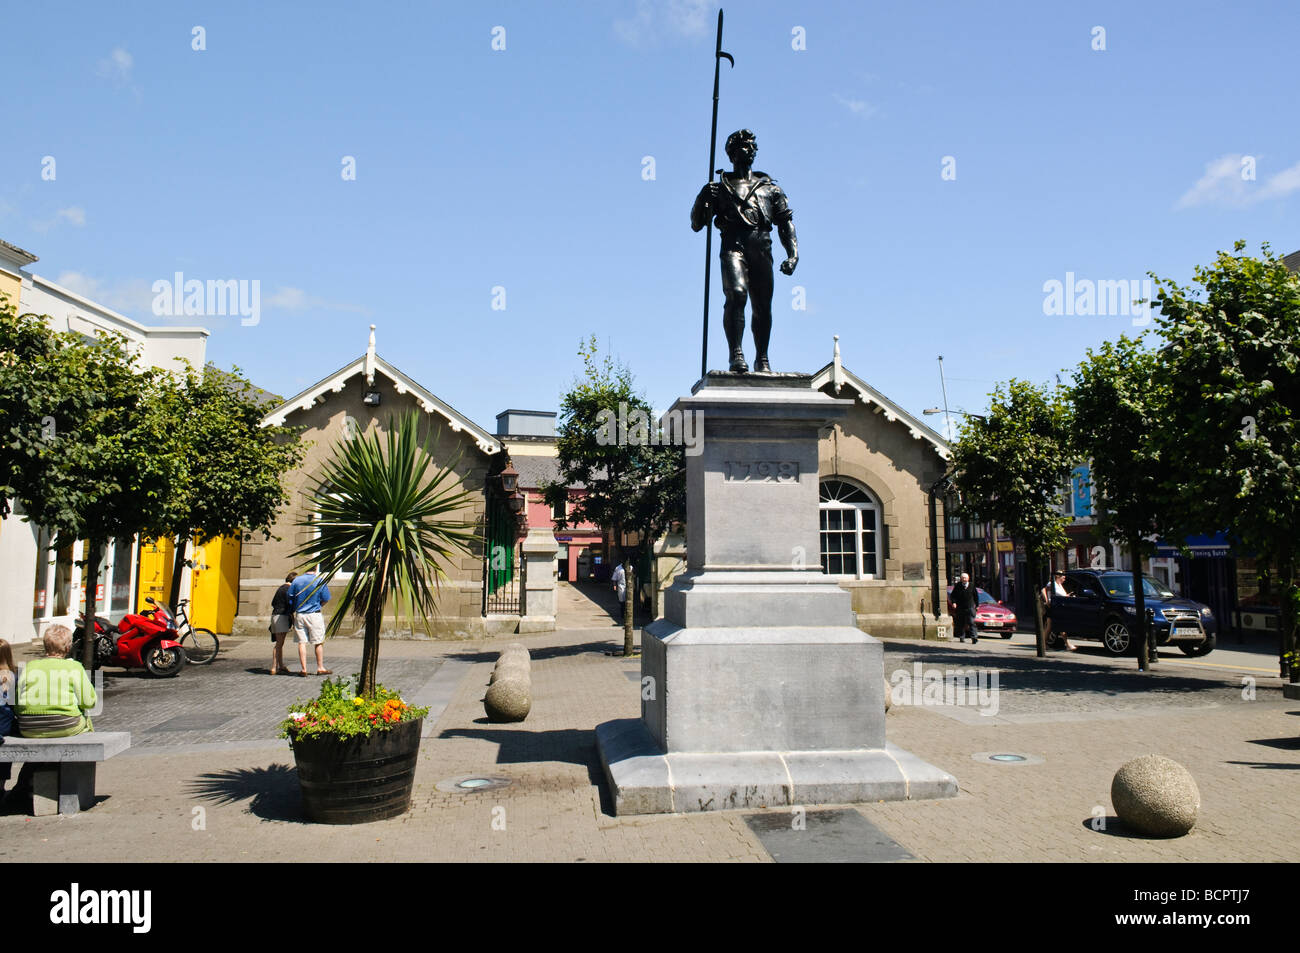 Statue d'un Wexford Pikeman, commémorant le soulèvement de la rébellion irlandaise de 1798, la ville de Wexford. Banque D'Images